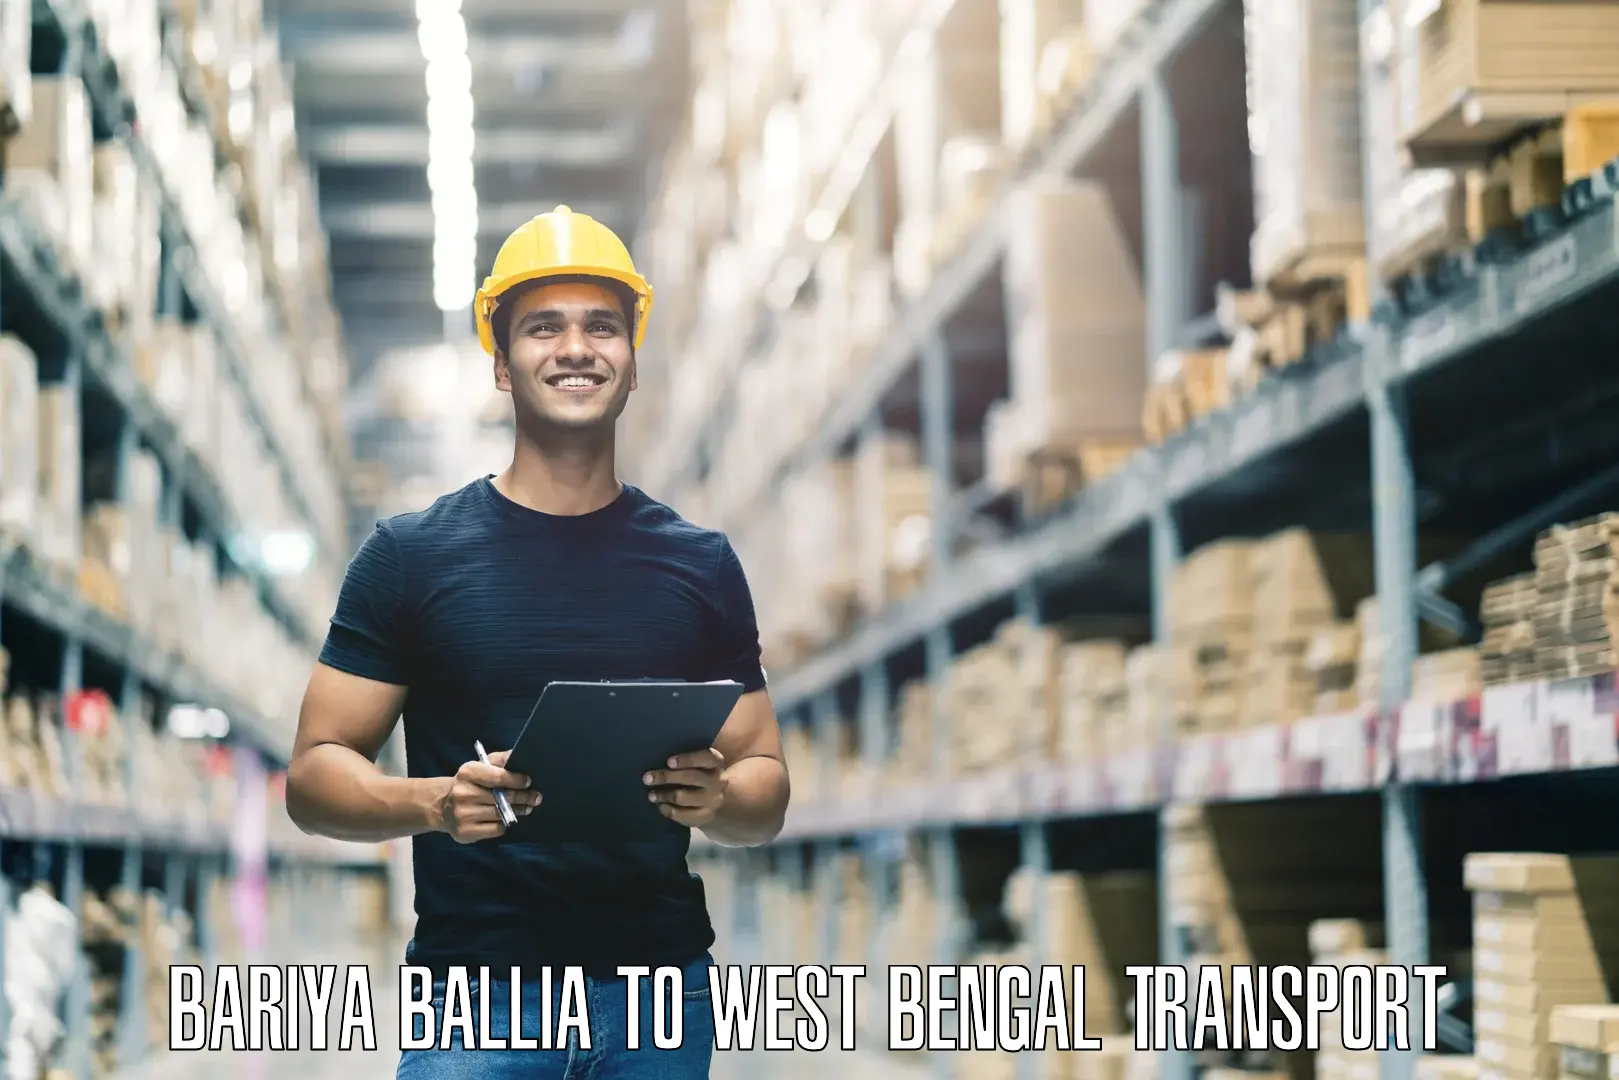 Furniture transport service Bariya Ballia to Jalpaiguri